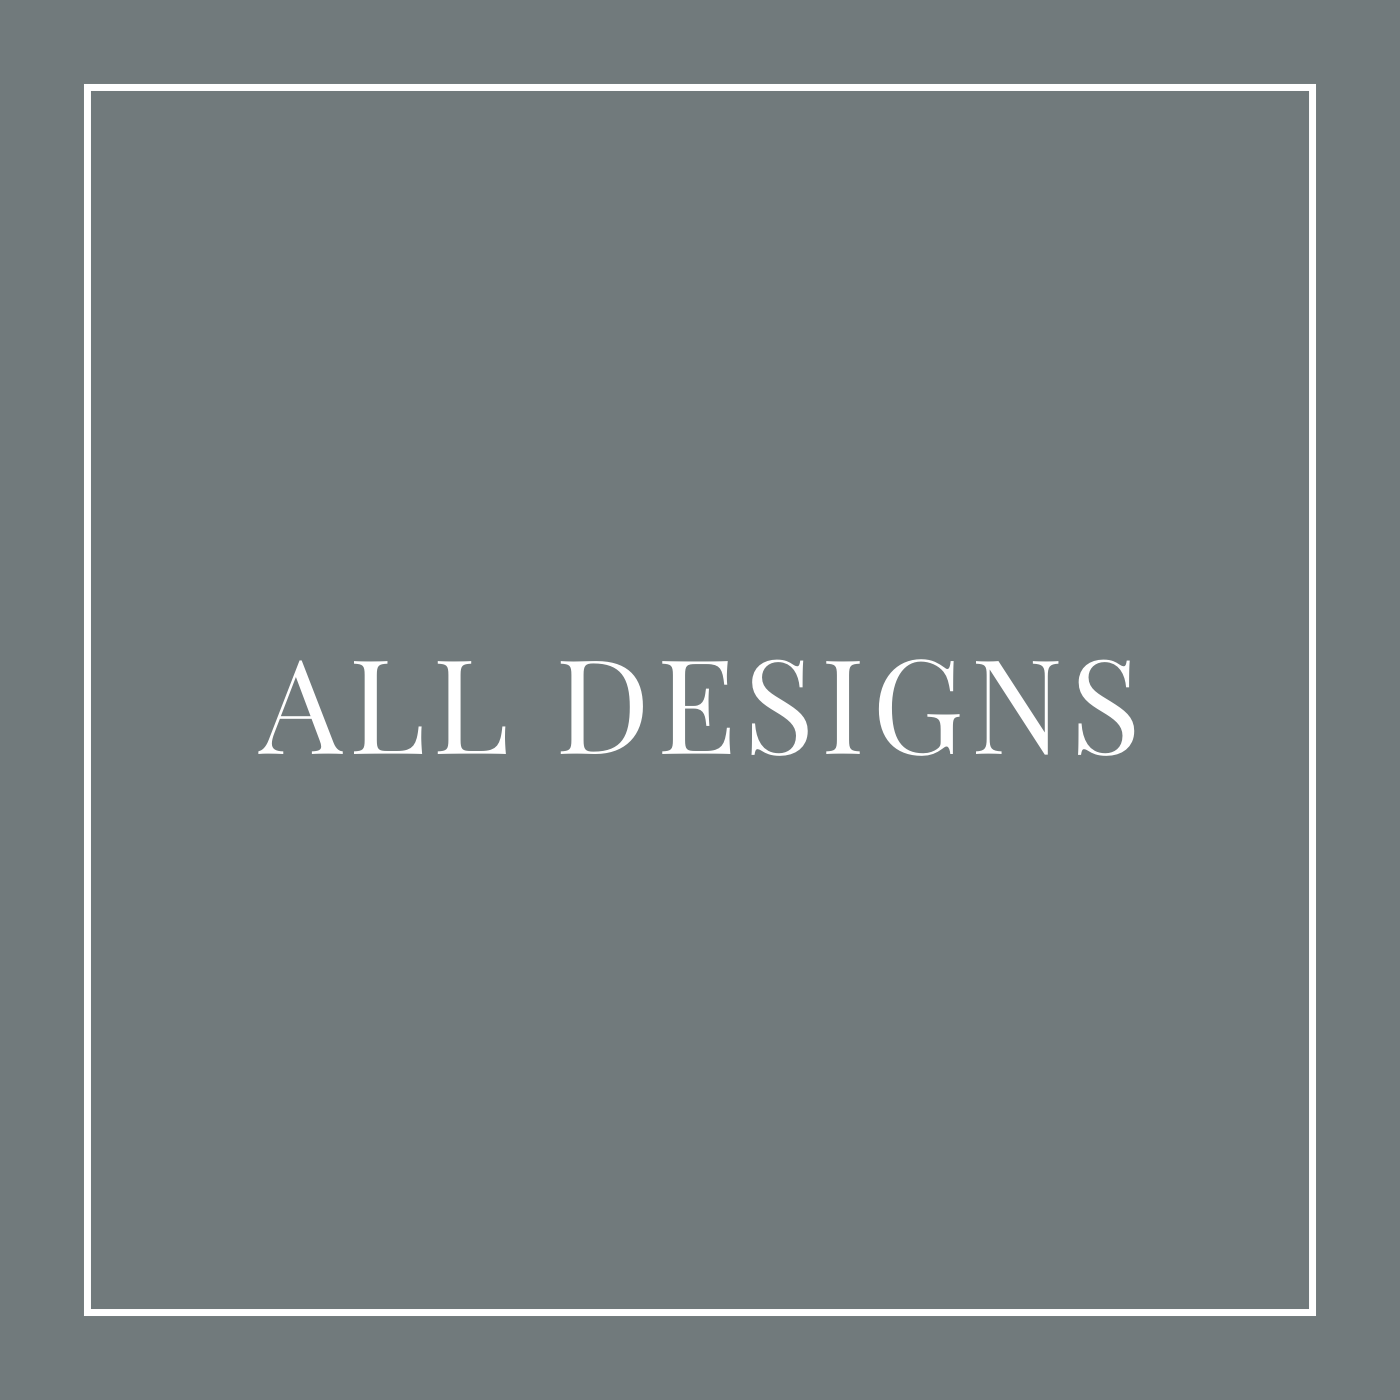 All Designs